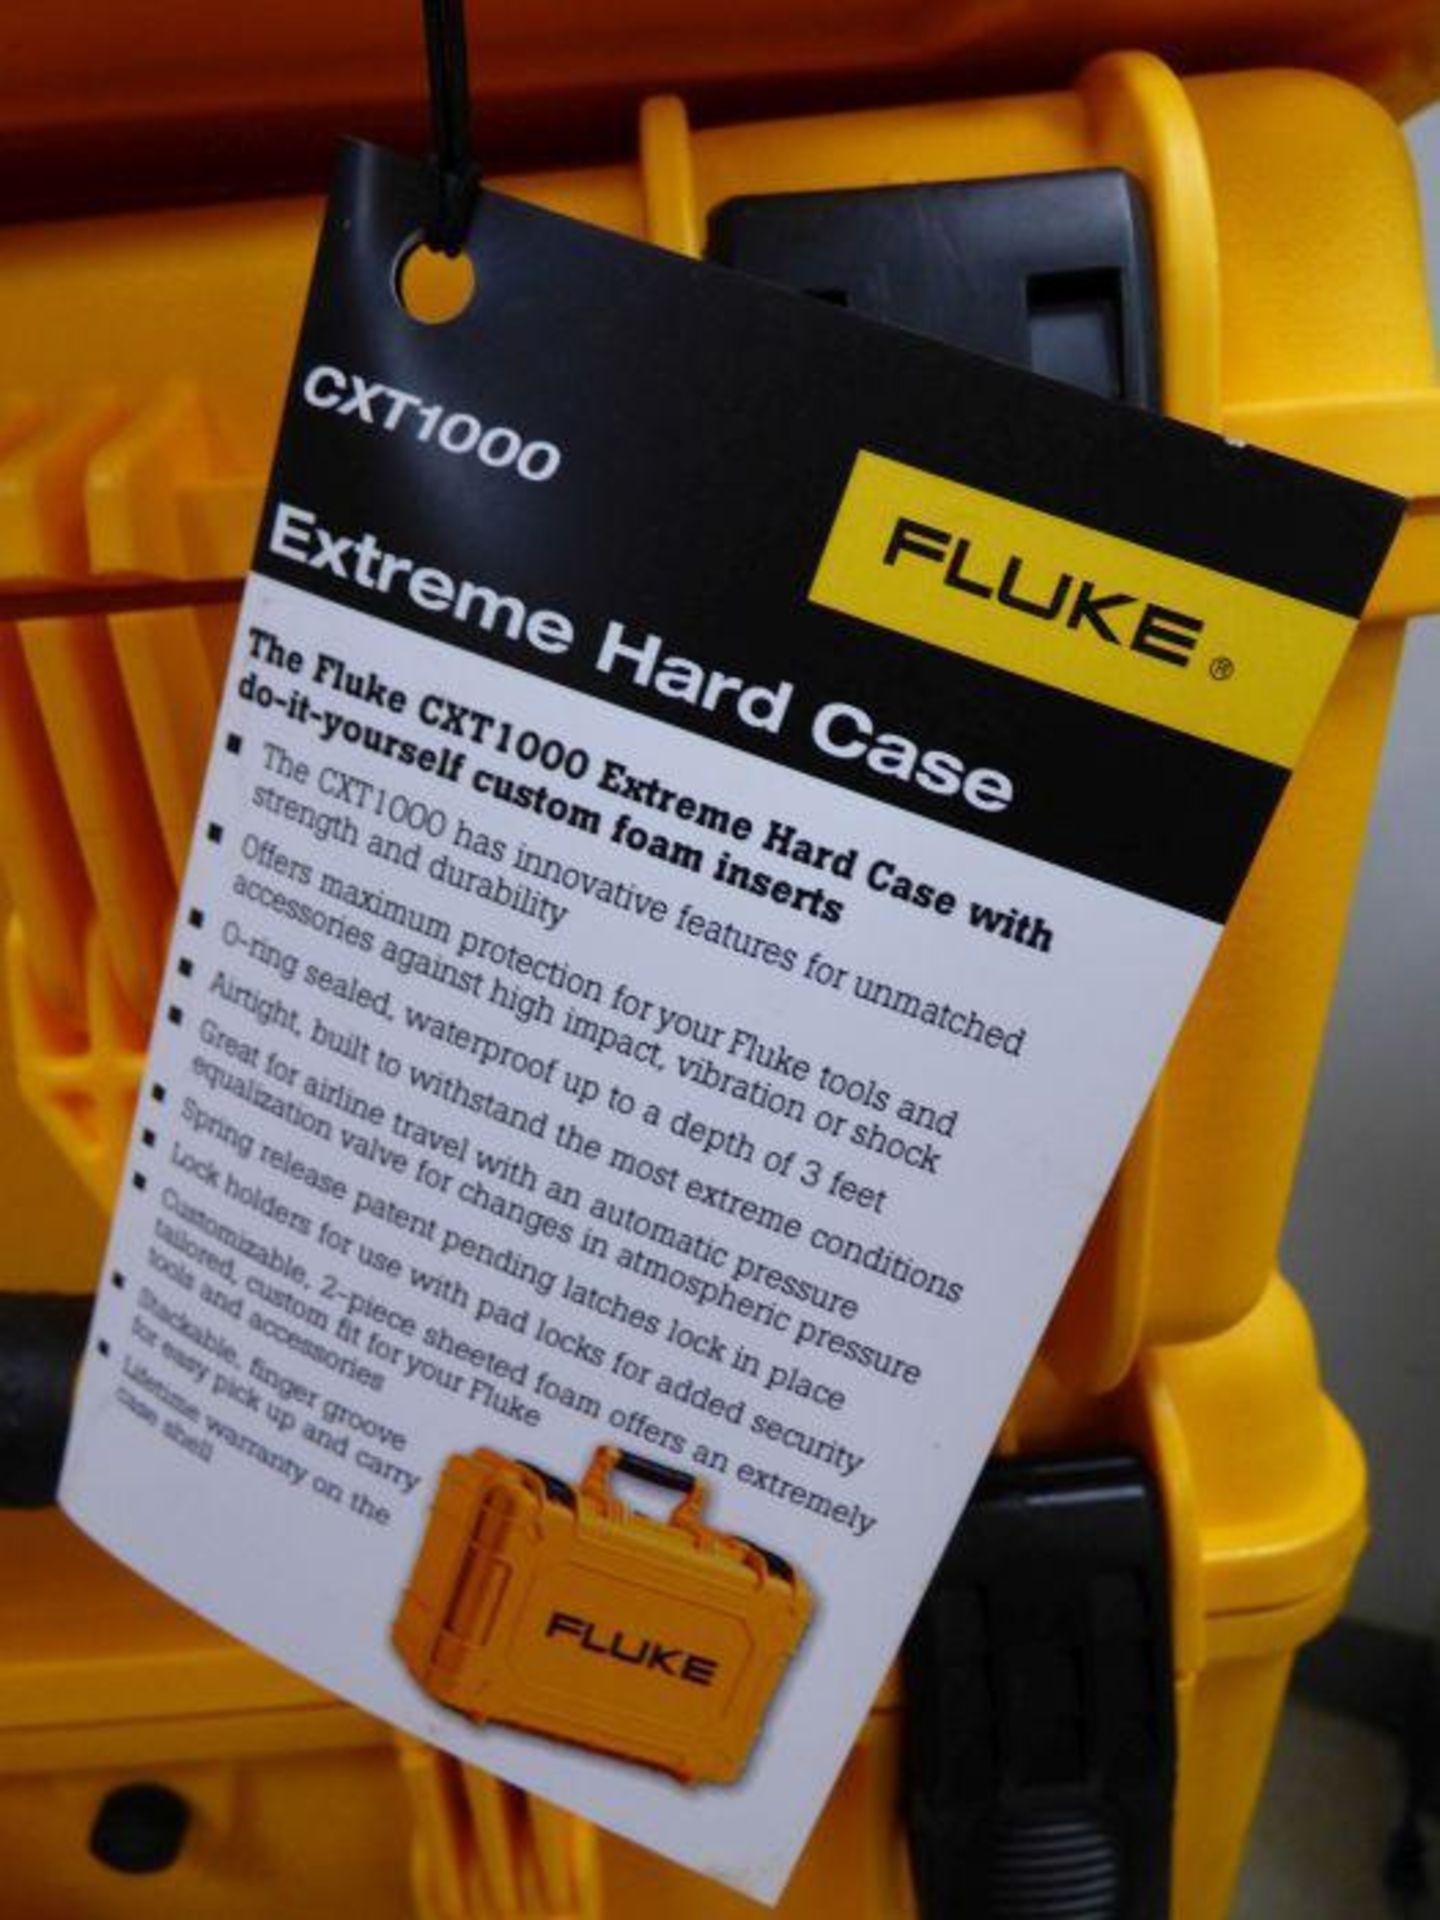 Lot of Fluke CXT1000 Extreme Hard Cases - Image 3 of 3